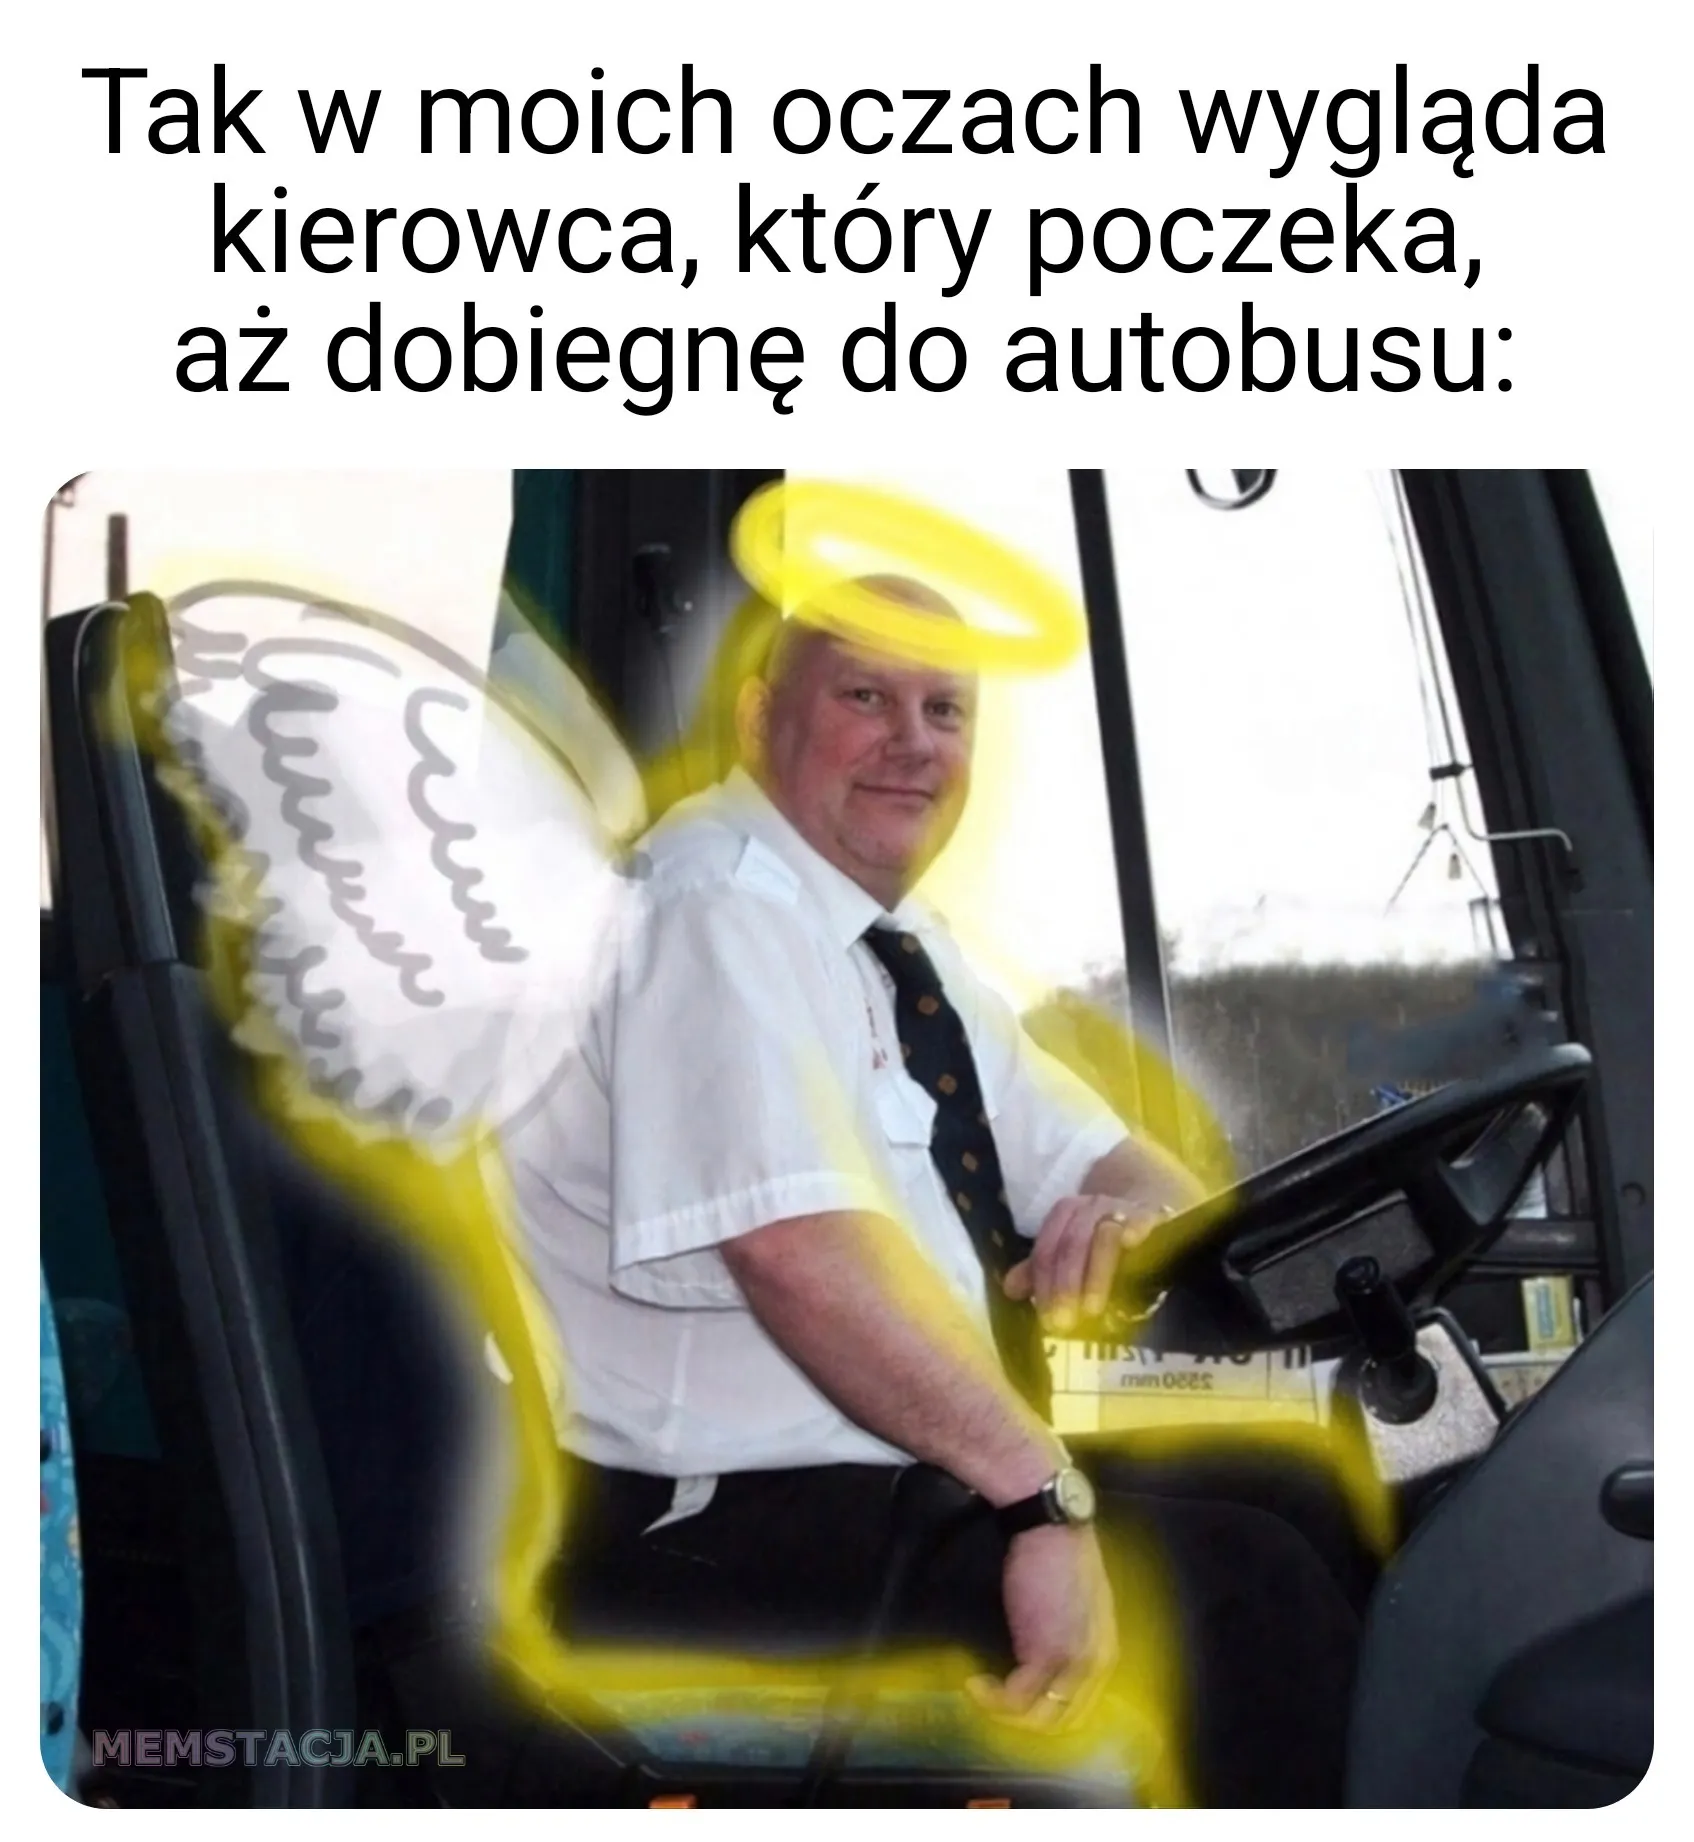 Mem przedstawiający kierowcę autobusu jako anioła: 'Tak w moich oczach wygląda kierowca, który poczeka aż dobiegnę do autobusu'